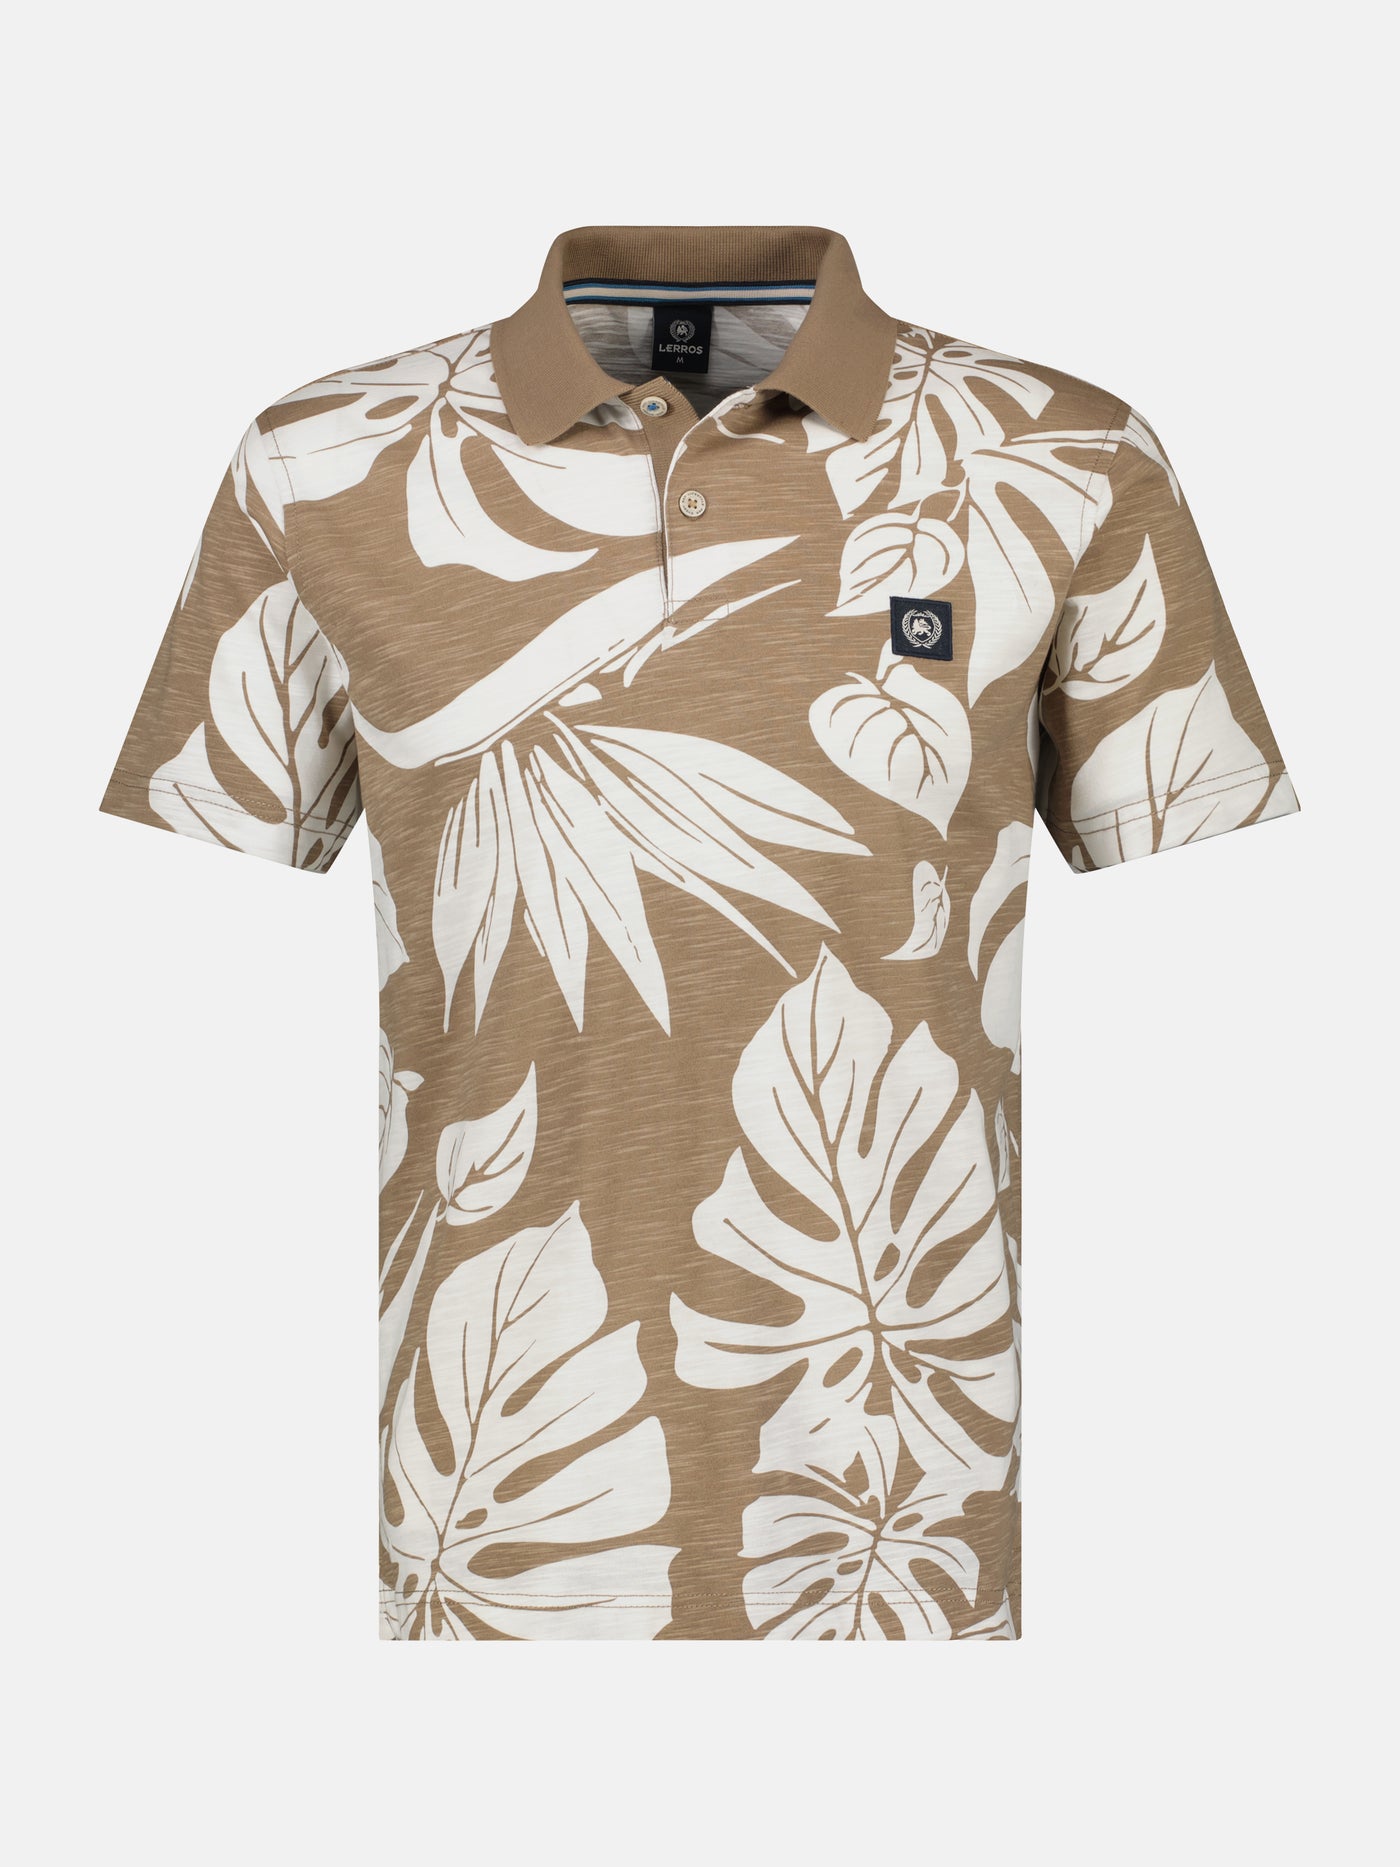 Poloshirt in Hawaiiaanse stijl